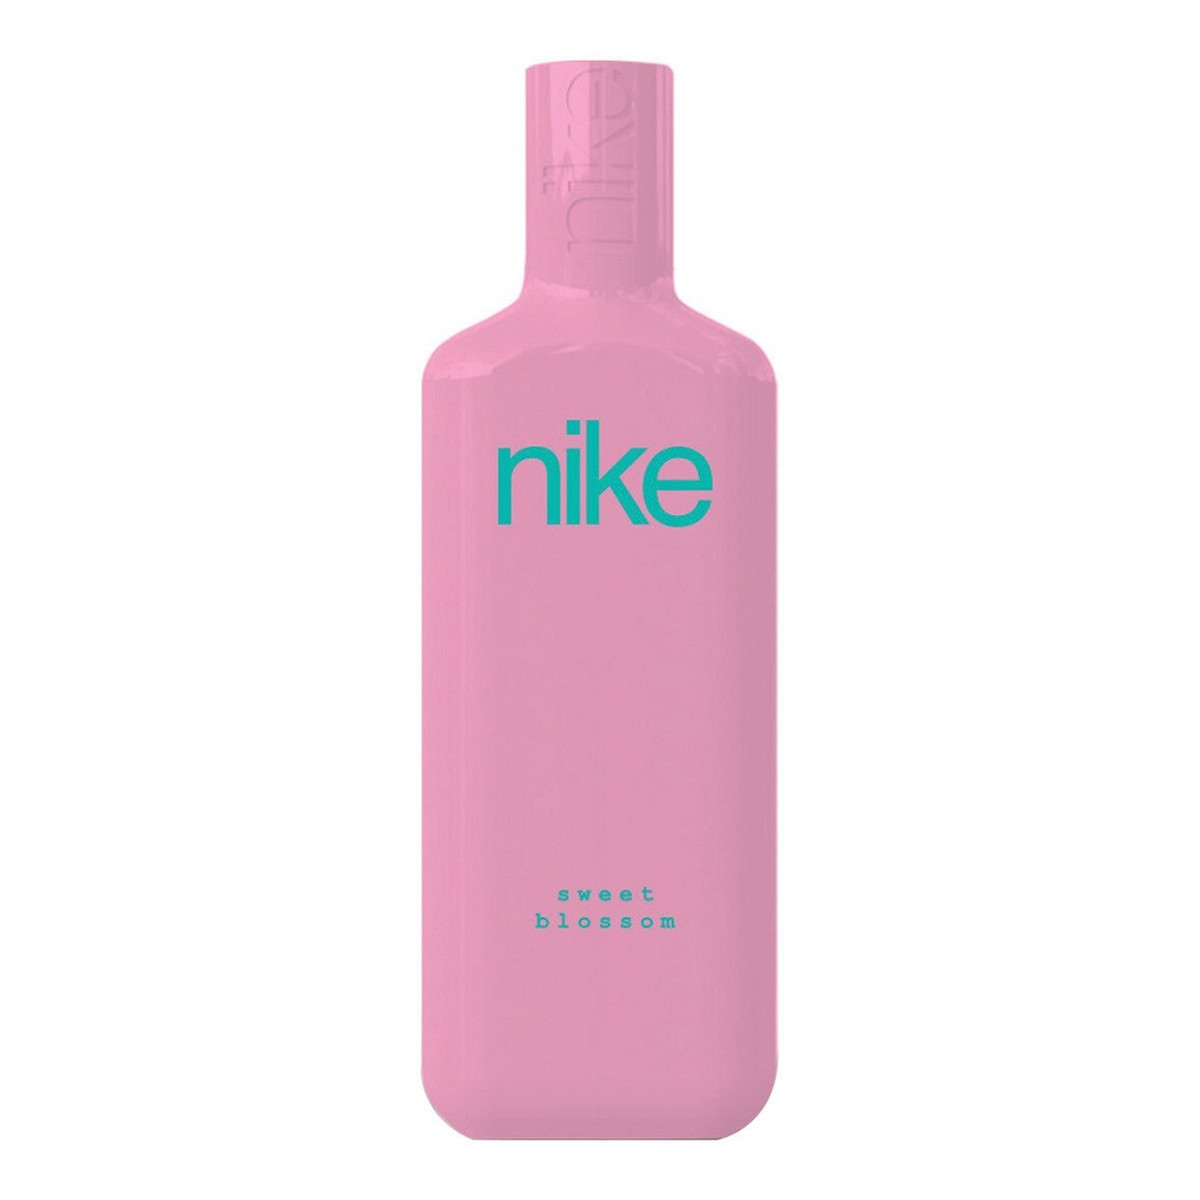 Nike Sweet Blossom Woman Woda toaletowa spray 150ml